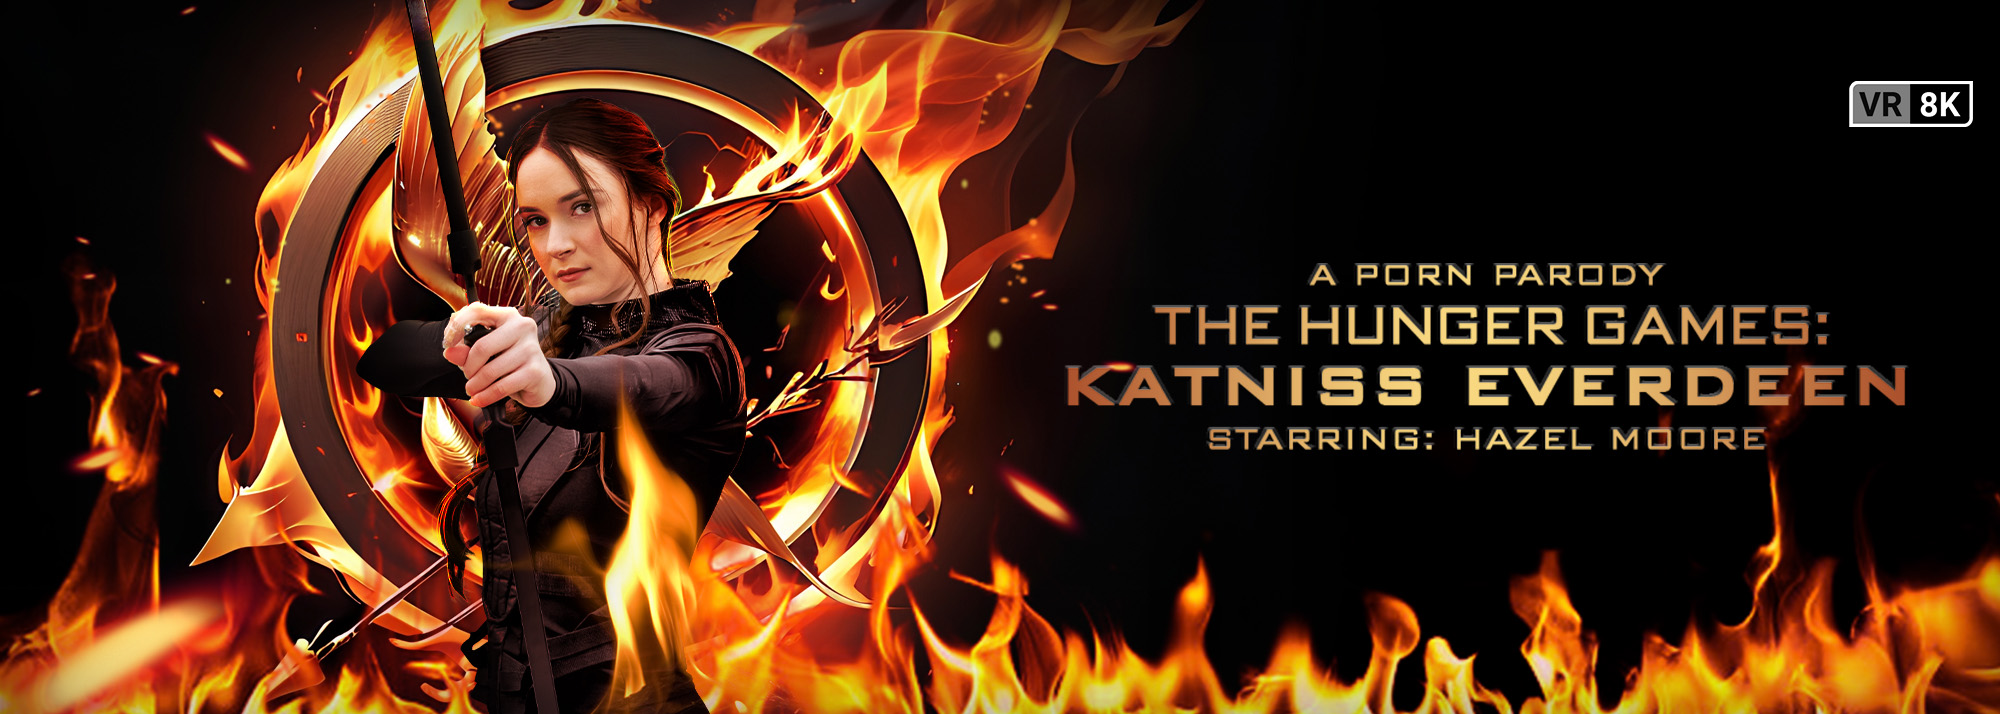 The Hunger Games: Katniss Everdeen (A Porn Parody) - VR Video, Starring: Hazel Moore